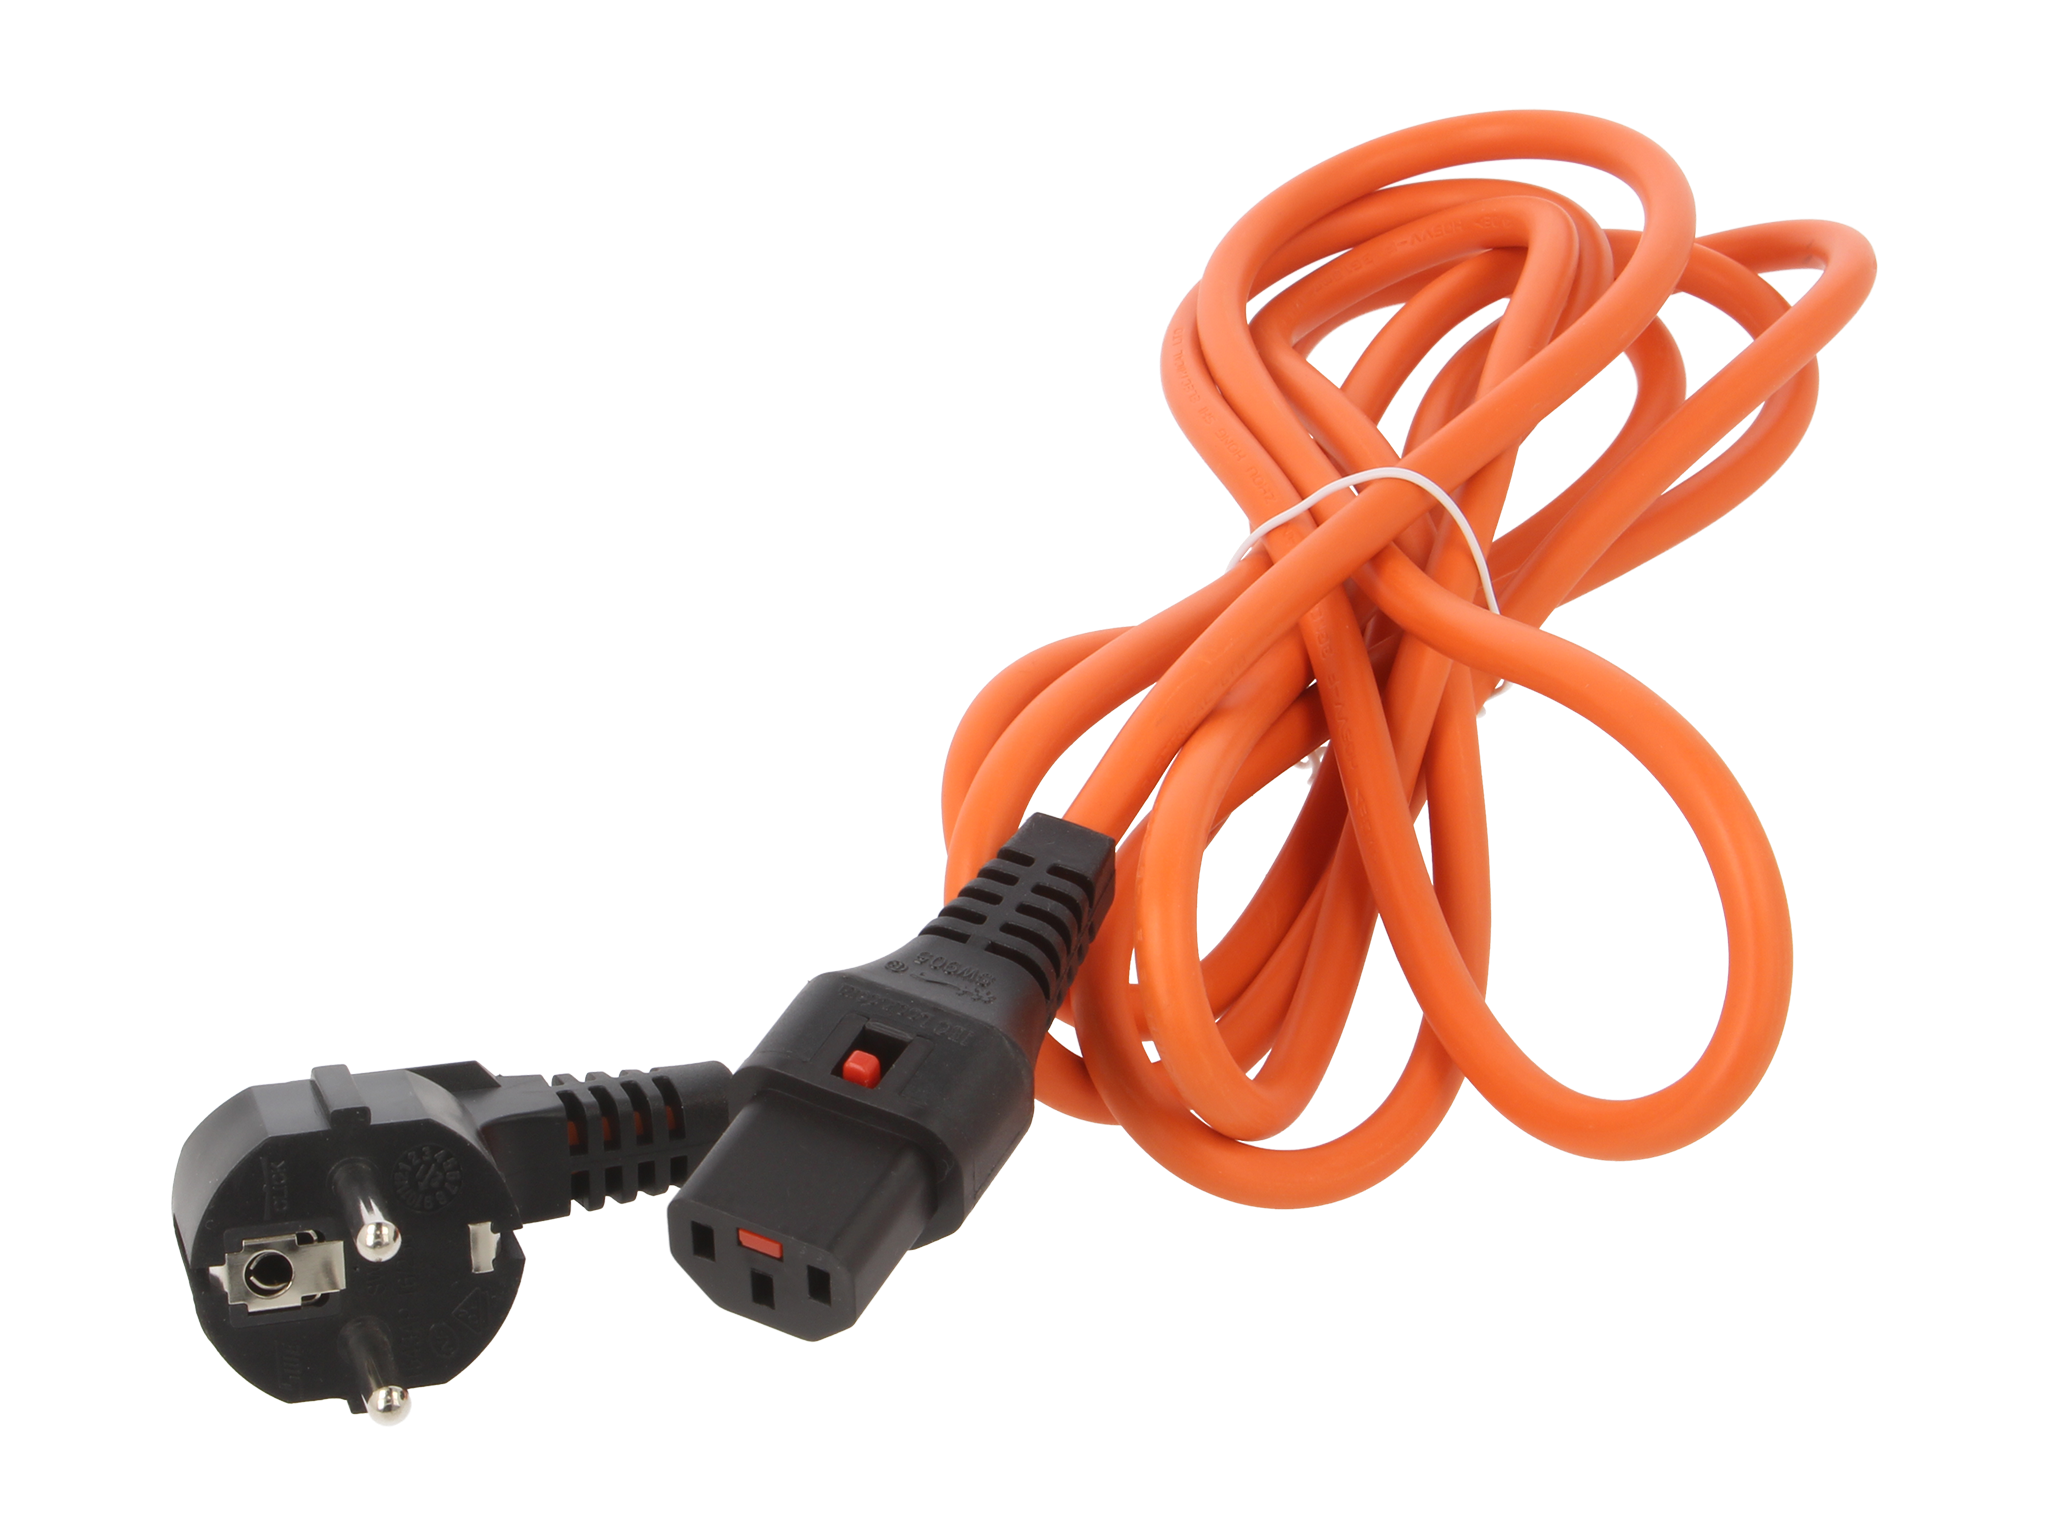 Alargador de cable de alimentación corto, cable adaptador de 15 A a 20 A.